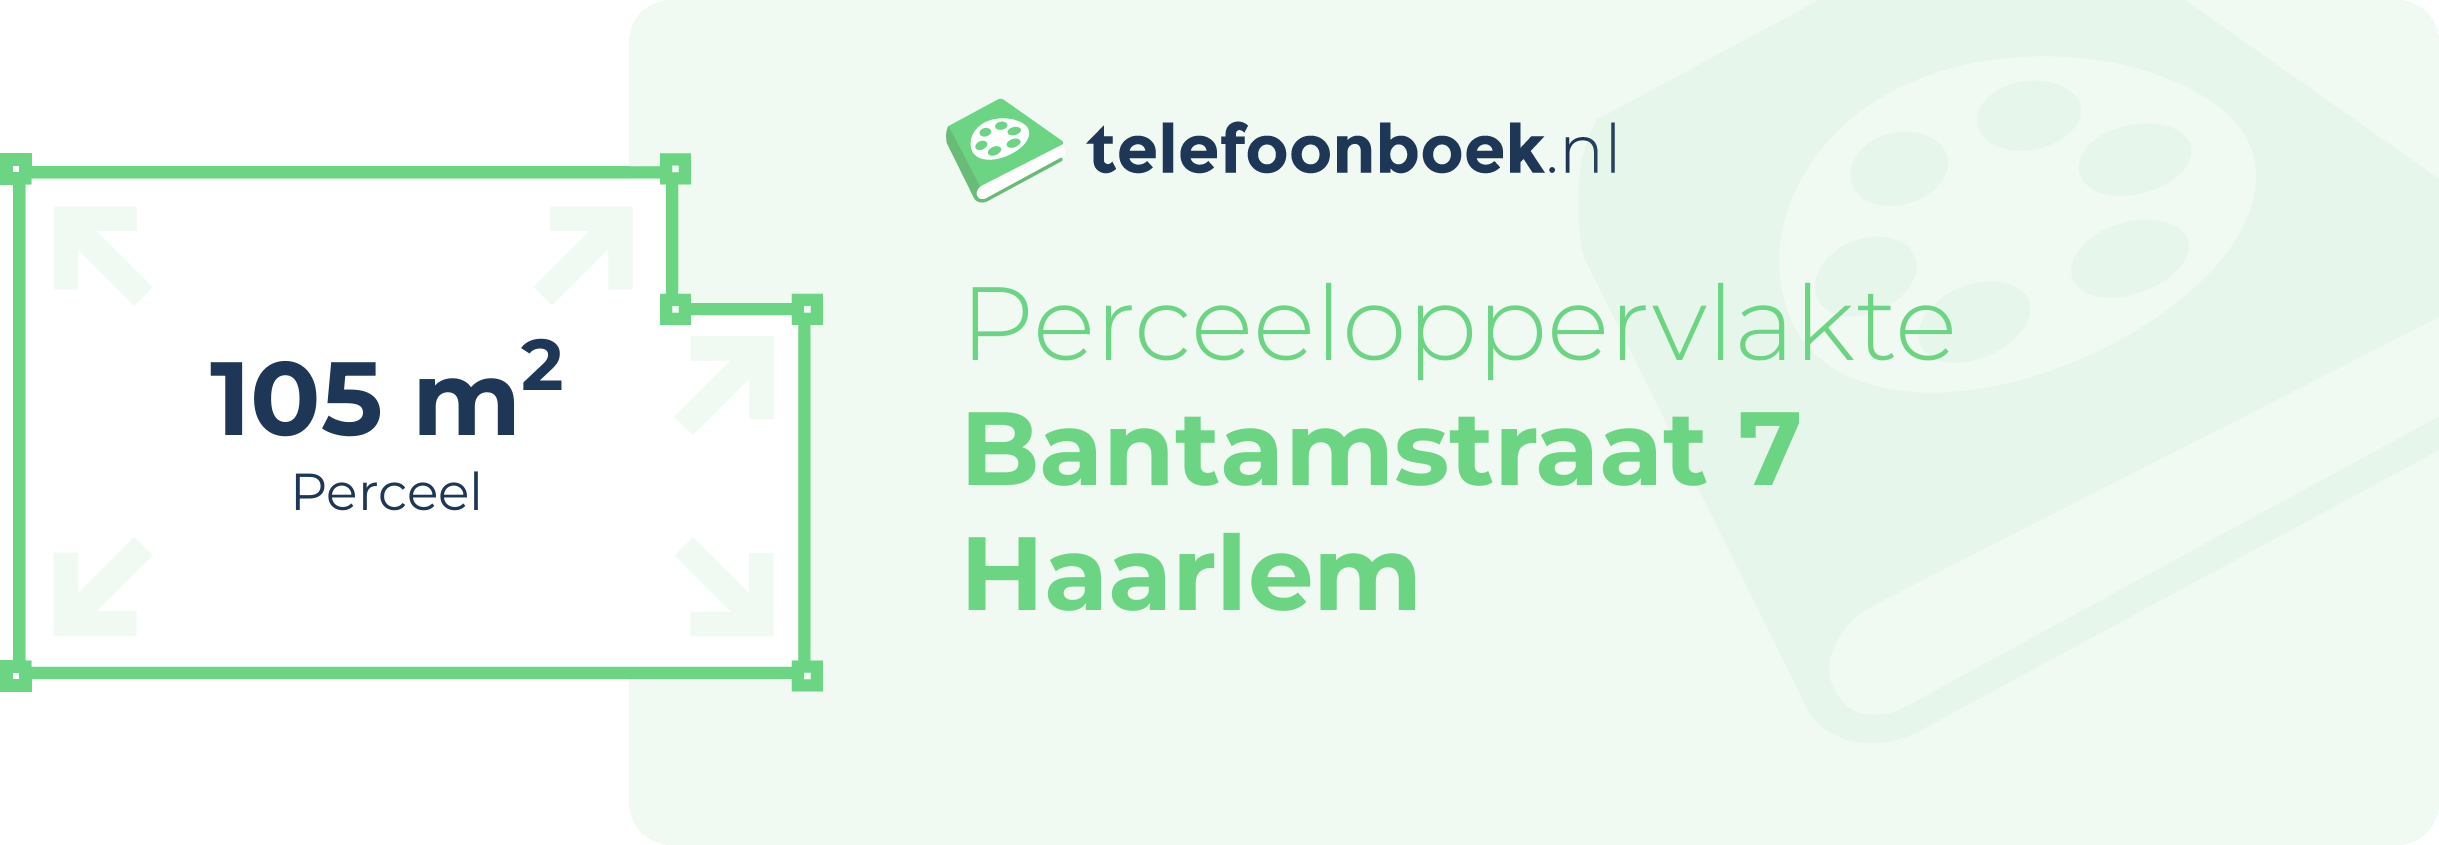 Perceeloppervlakte Bantamstraat 7 Haarlem